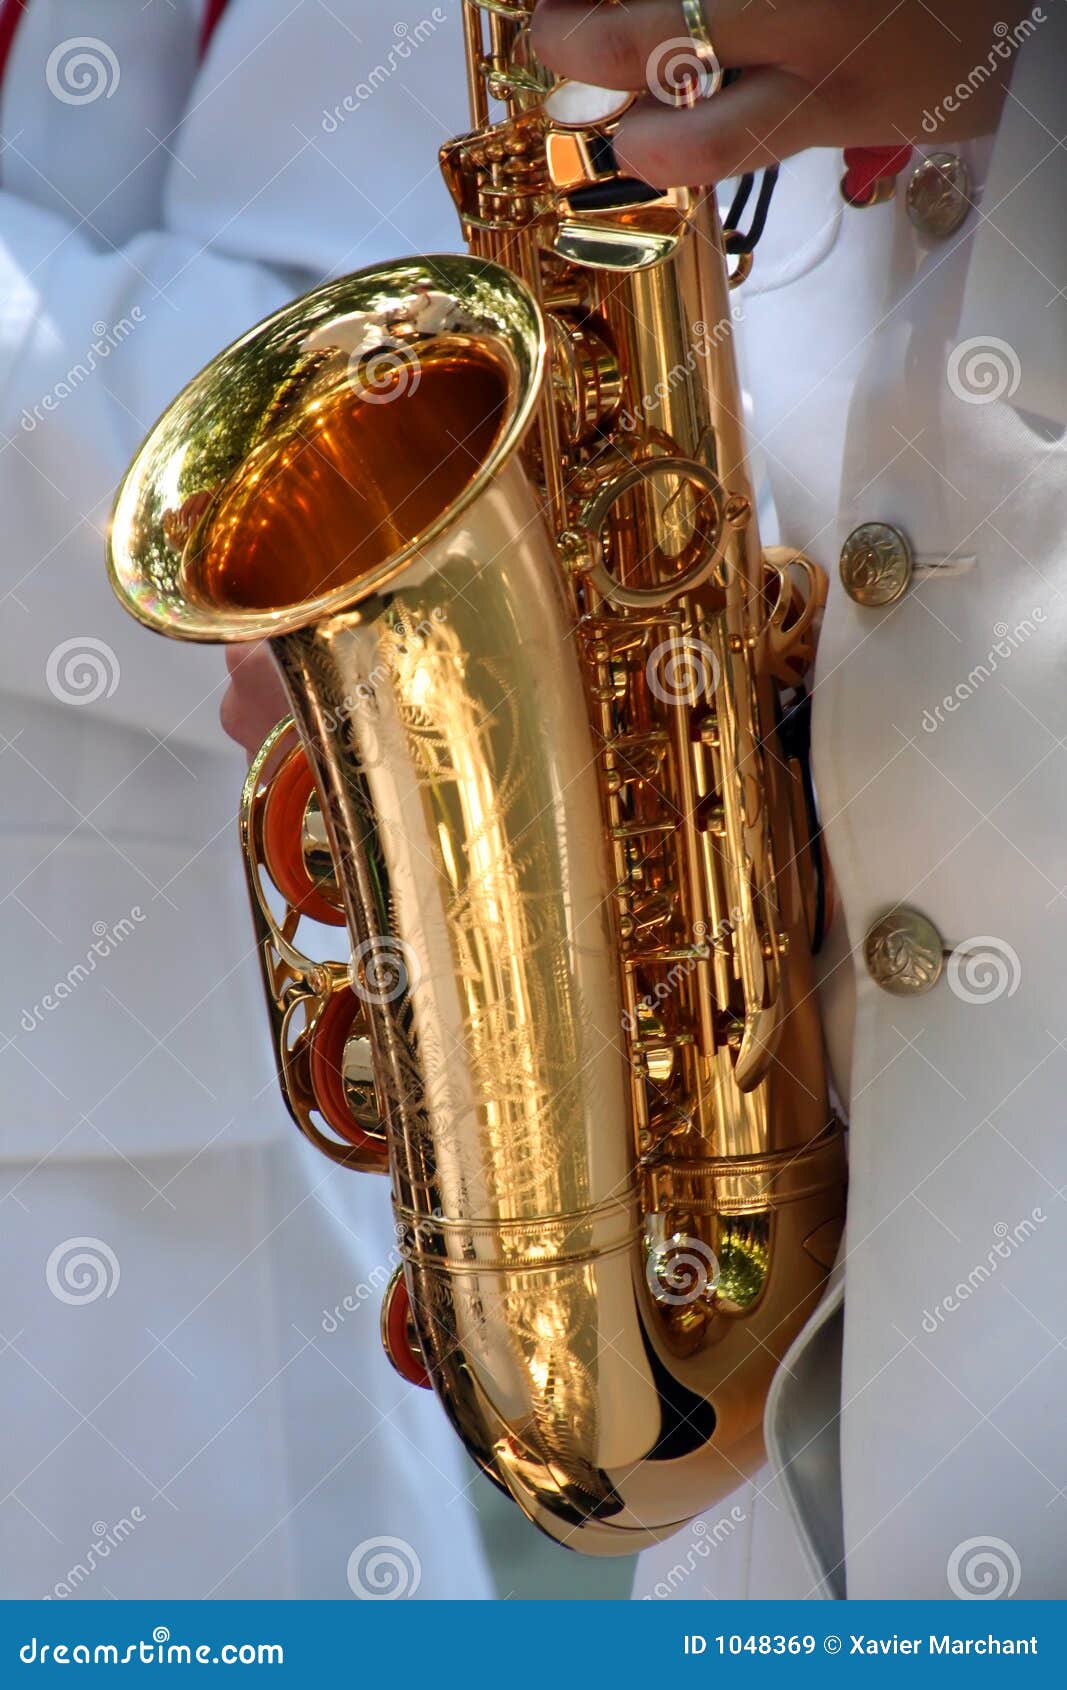 saxophone details